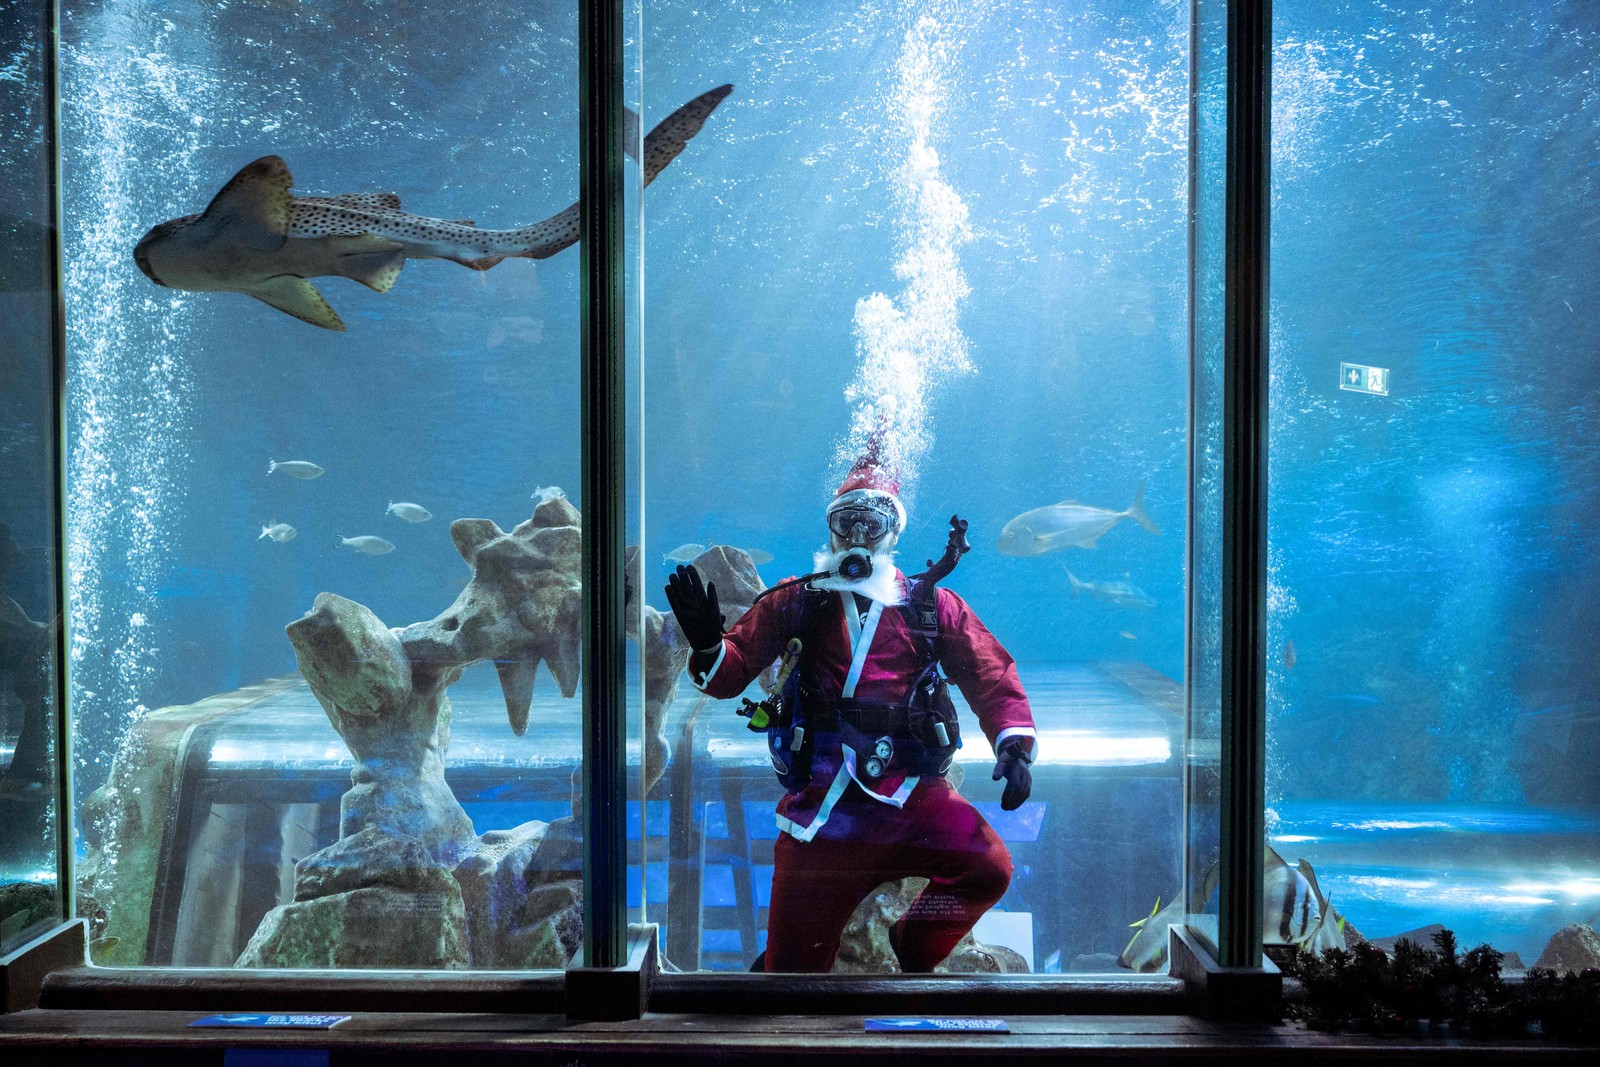 Mergulhador se fantasia de Papai Noel para alimentar animais de um aquário em Blackpool, norte da Inglaterra — Foto: OLI SCARFF/AFP